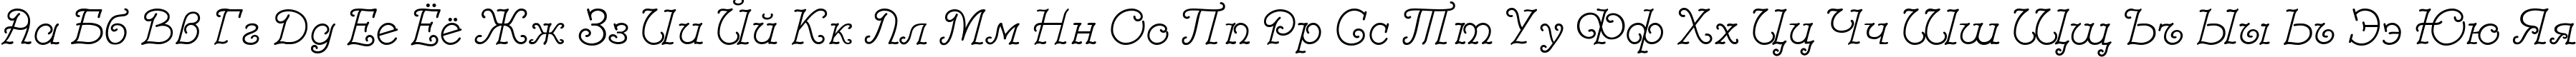 Пример написания русского алфавита шрифтом Modestina